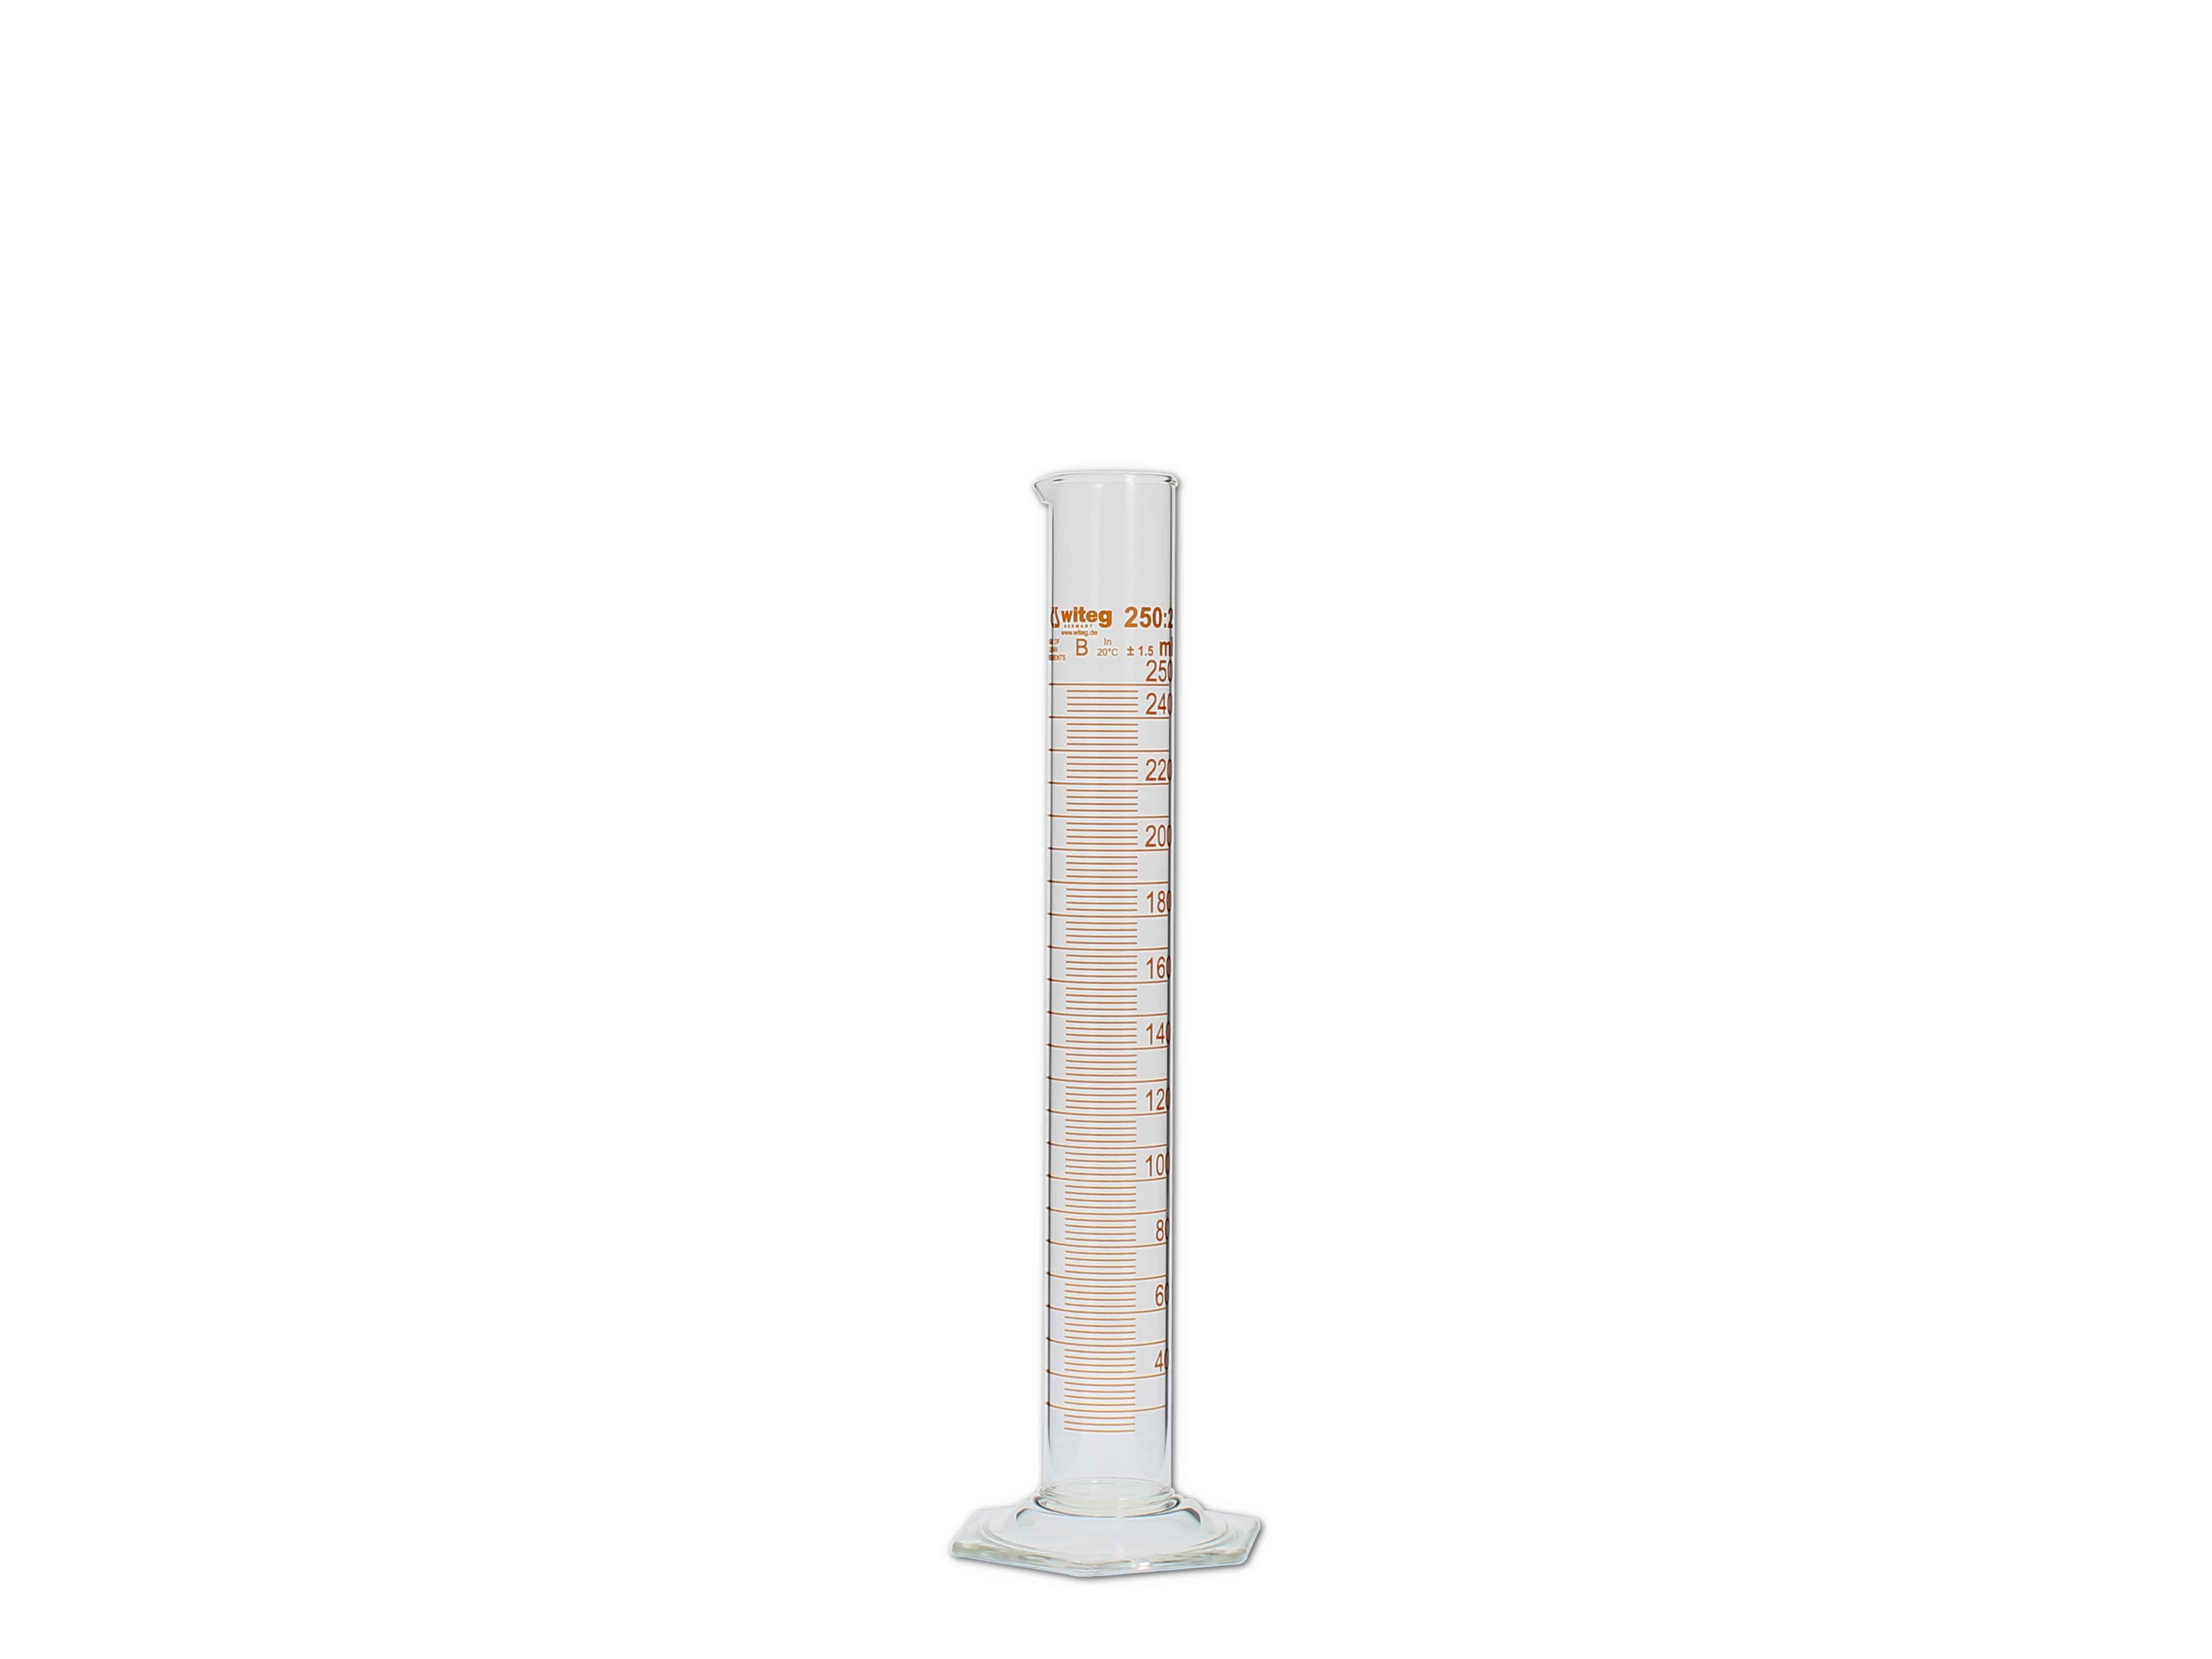    Messzylinder, Glas, graduiert - 250ml (hohe Form)